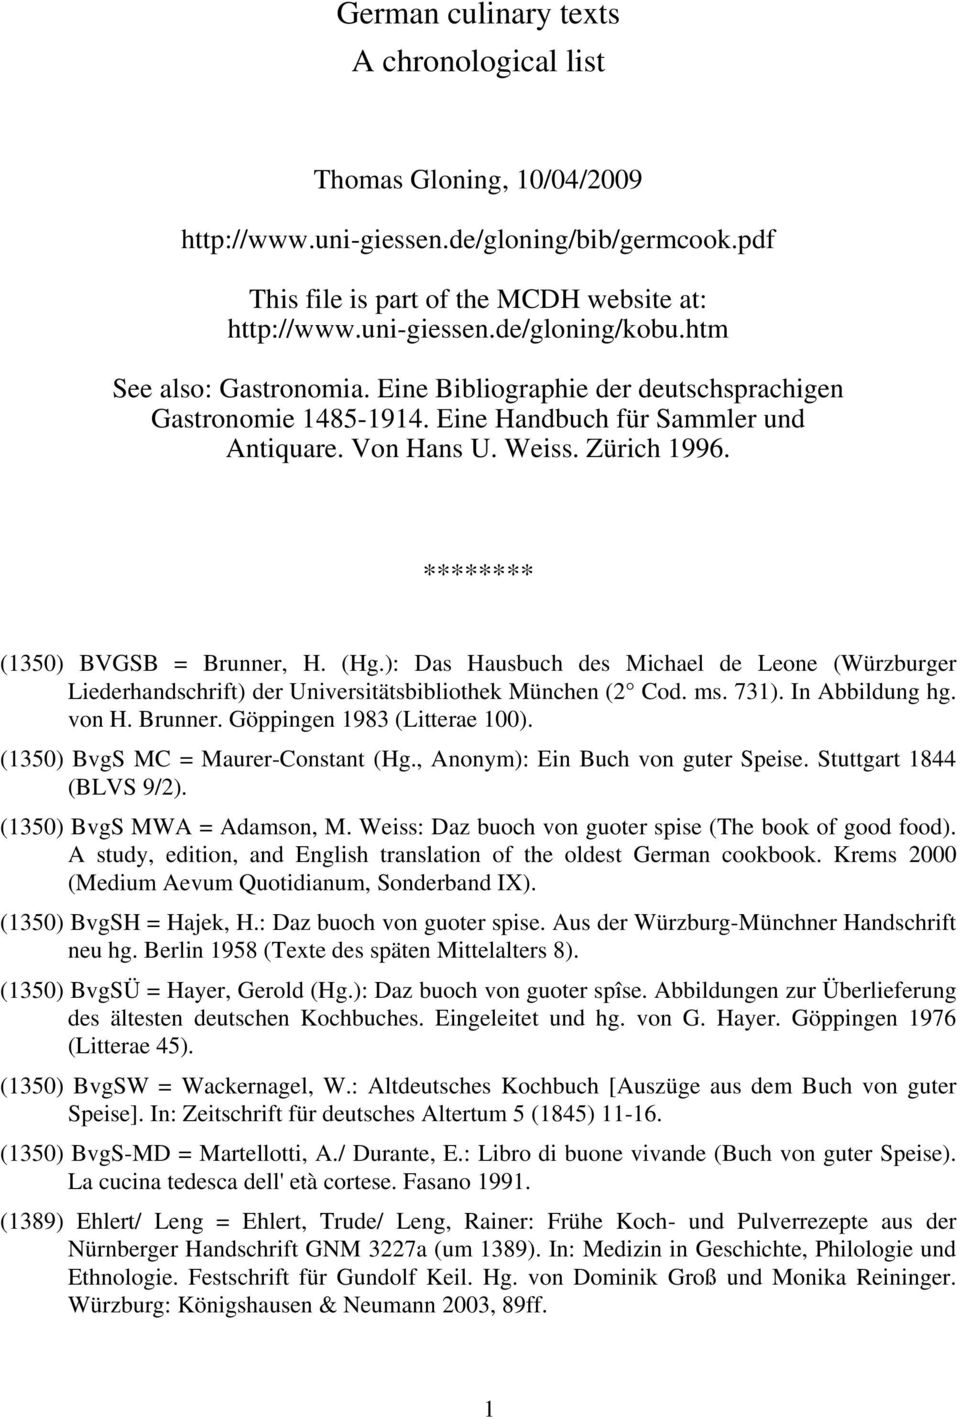 (Hg.): Das Hausbuch des Michael de Leone (Würzburger Liederhandschrift) der Universitätsbibliothek München (2 Cod. ms. 731). In Abbildung hg. von H. Brunner. Göppingen 1983 (Litterae 100).